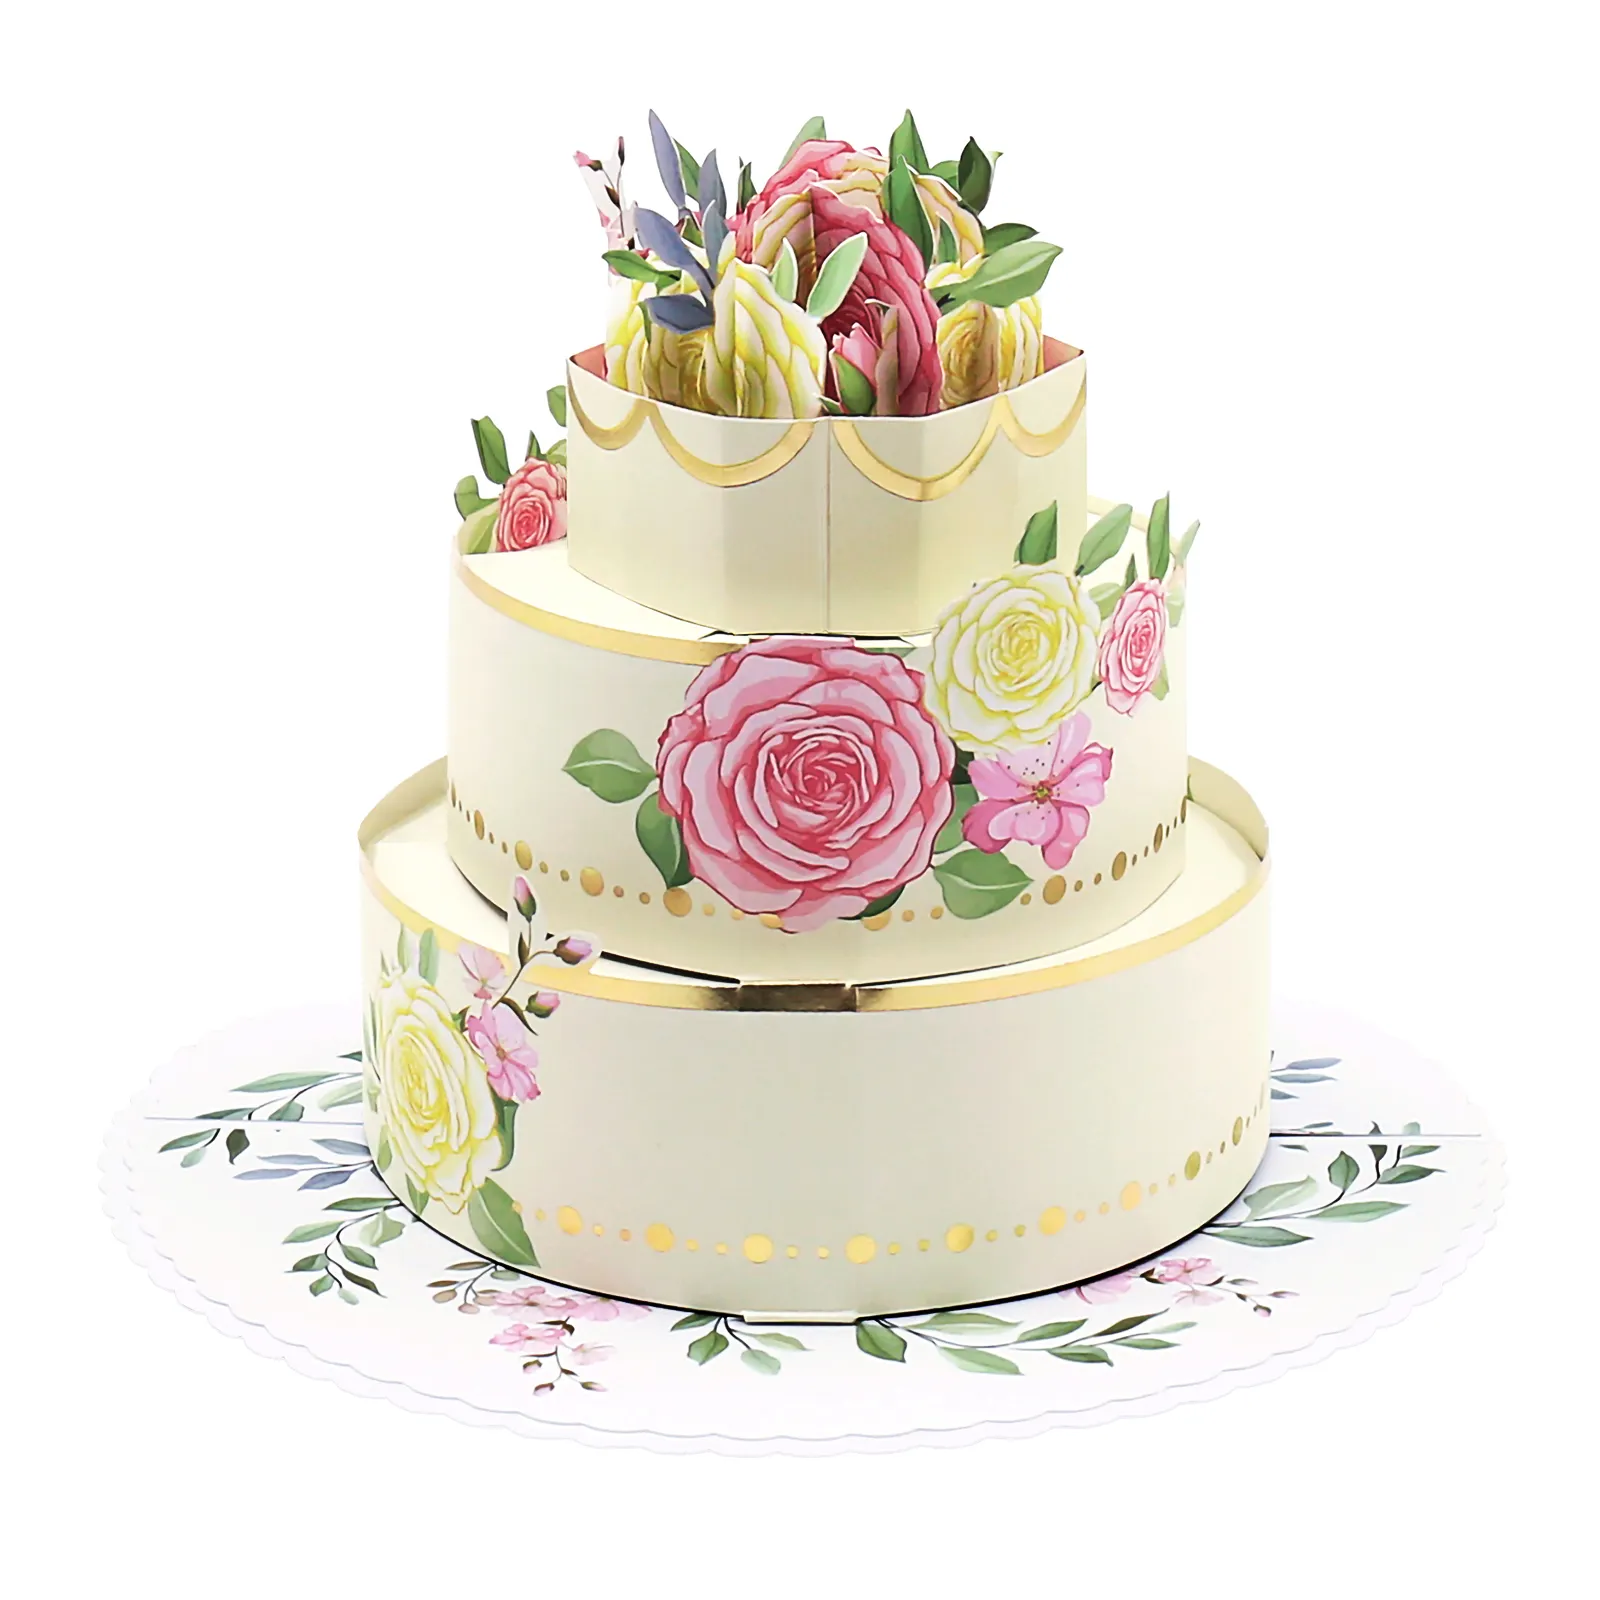 Совершенно новые эксклюзивные свадебные поздравительные открытки с розами и цветами, уникальные для свадьбы, экологичные 3D поздравительные открытки